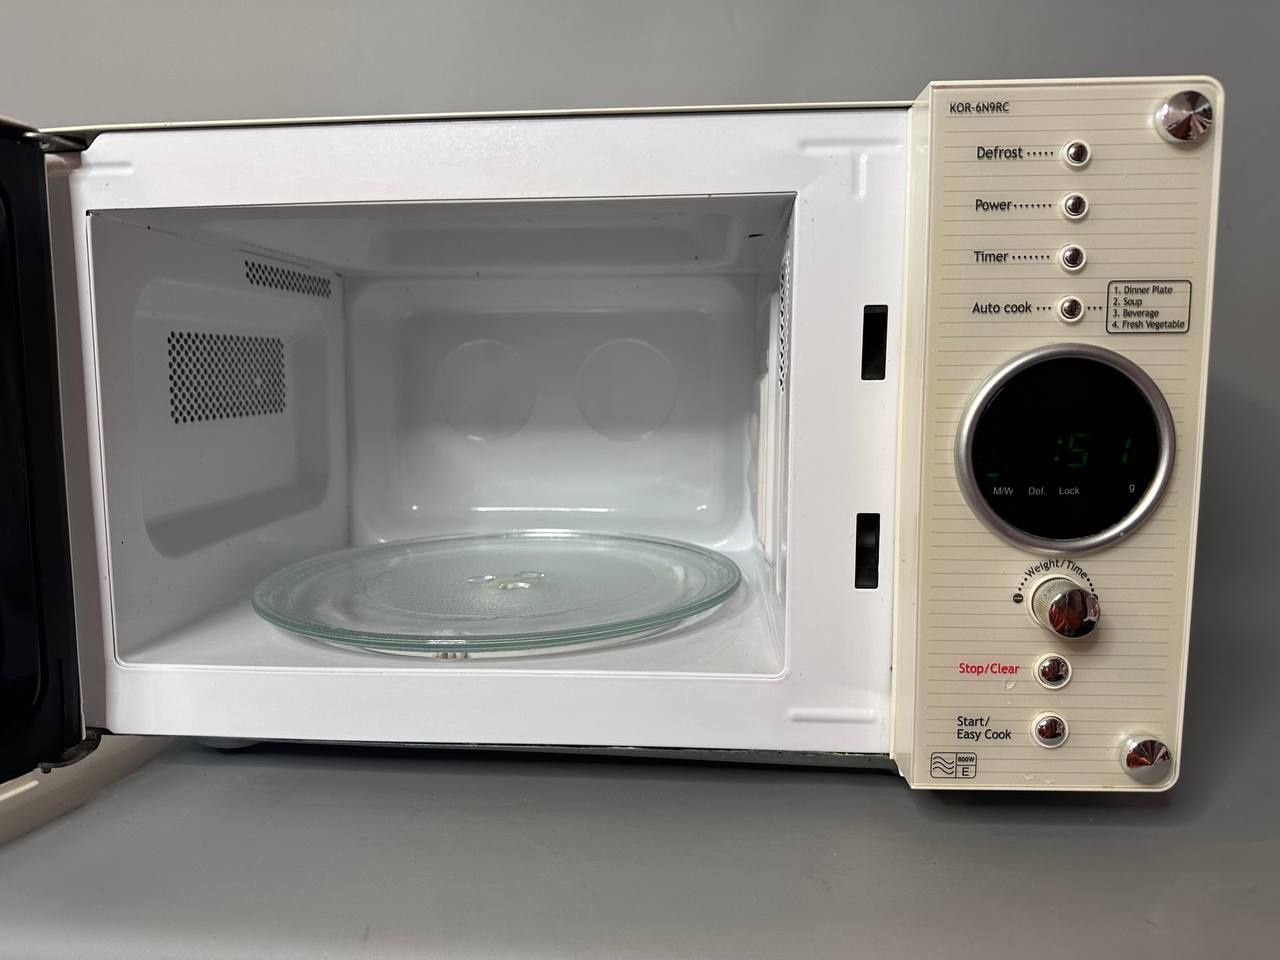 Микроволновая печь, микроволновка Daewoo KOR-6N9RC